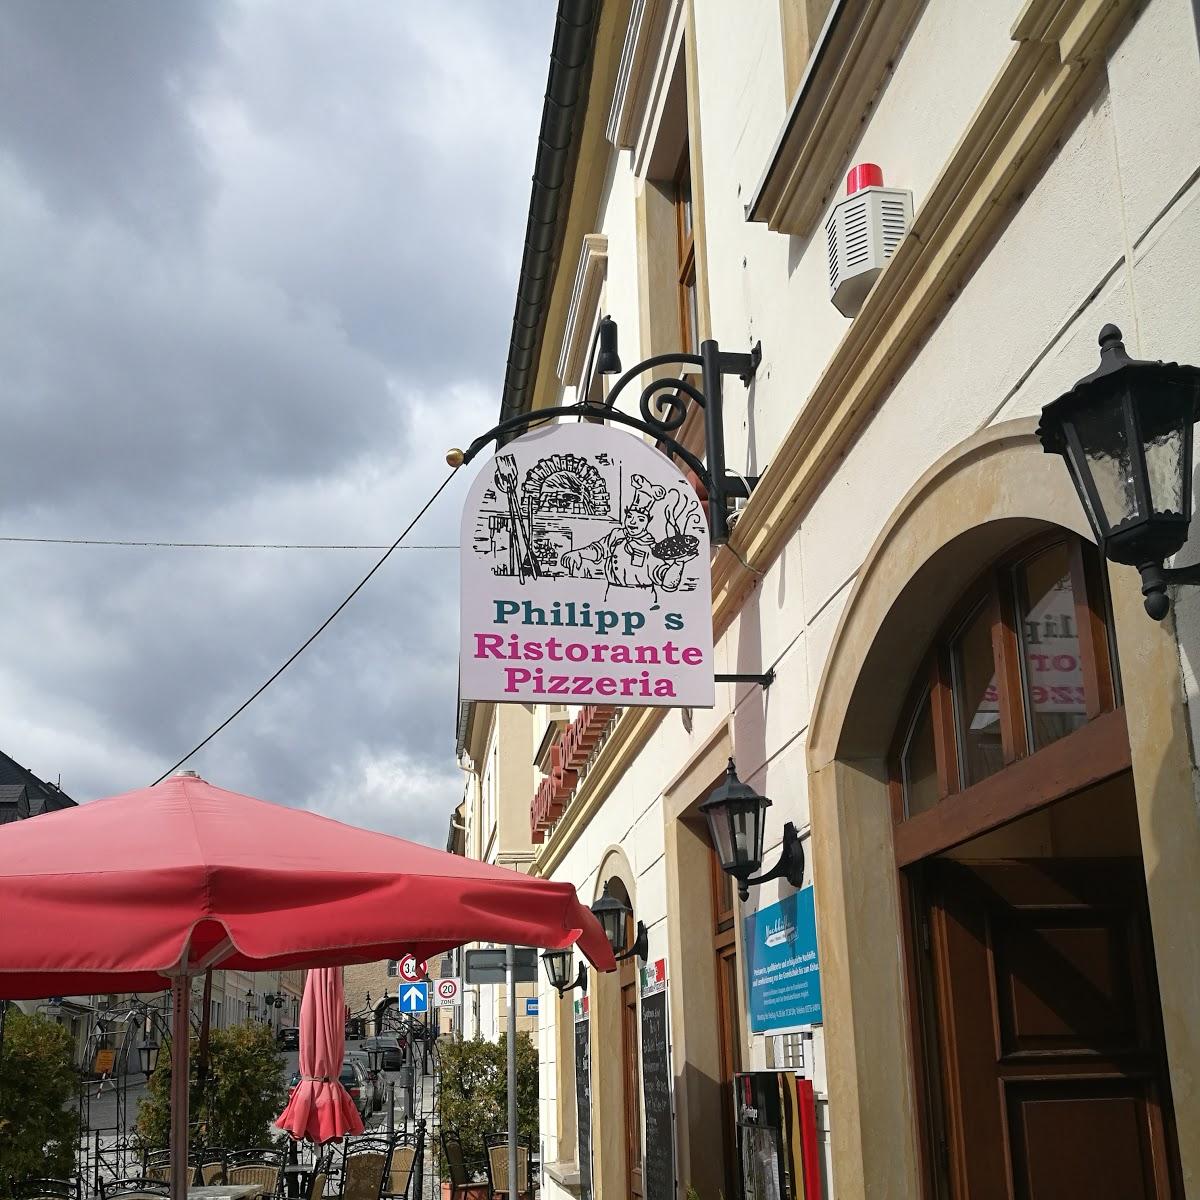 Restaurant "Philipp’s Pizzeria" in Marienberg